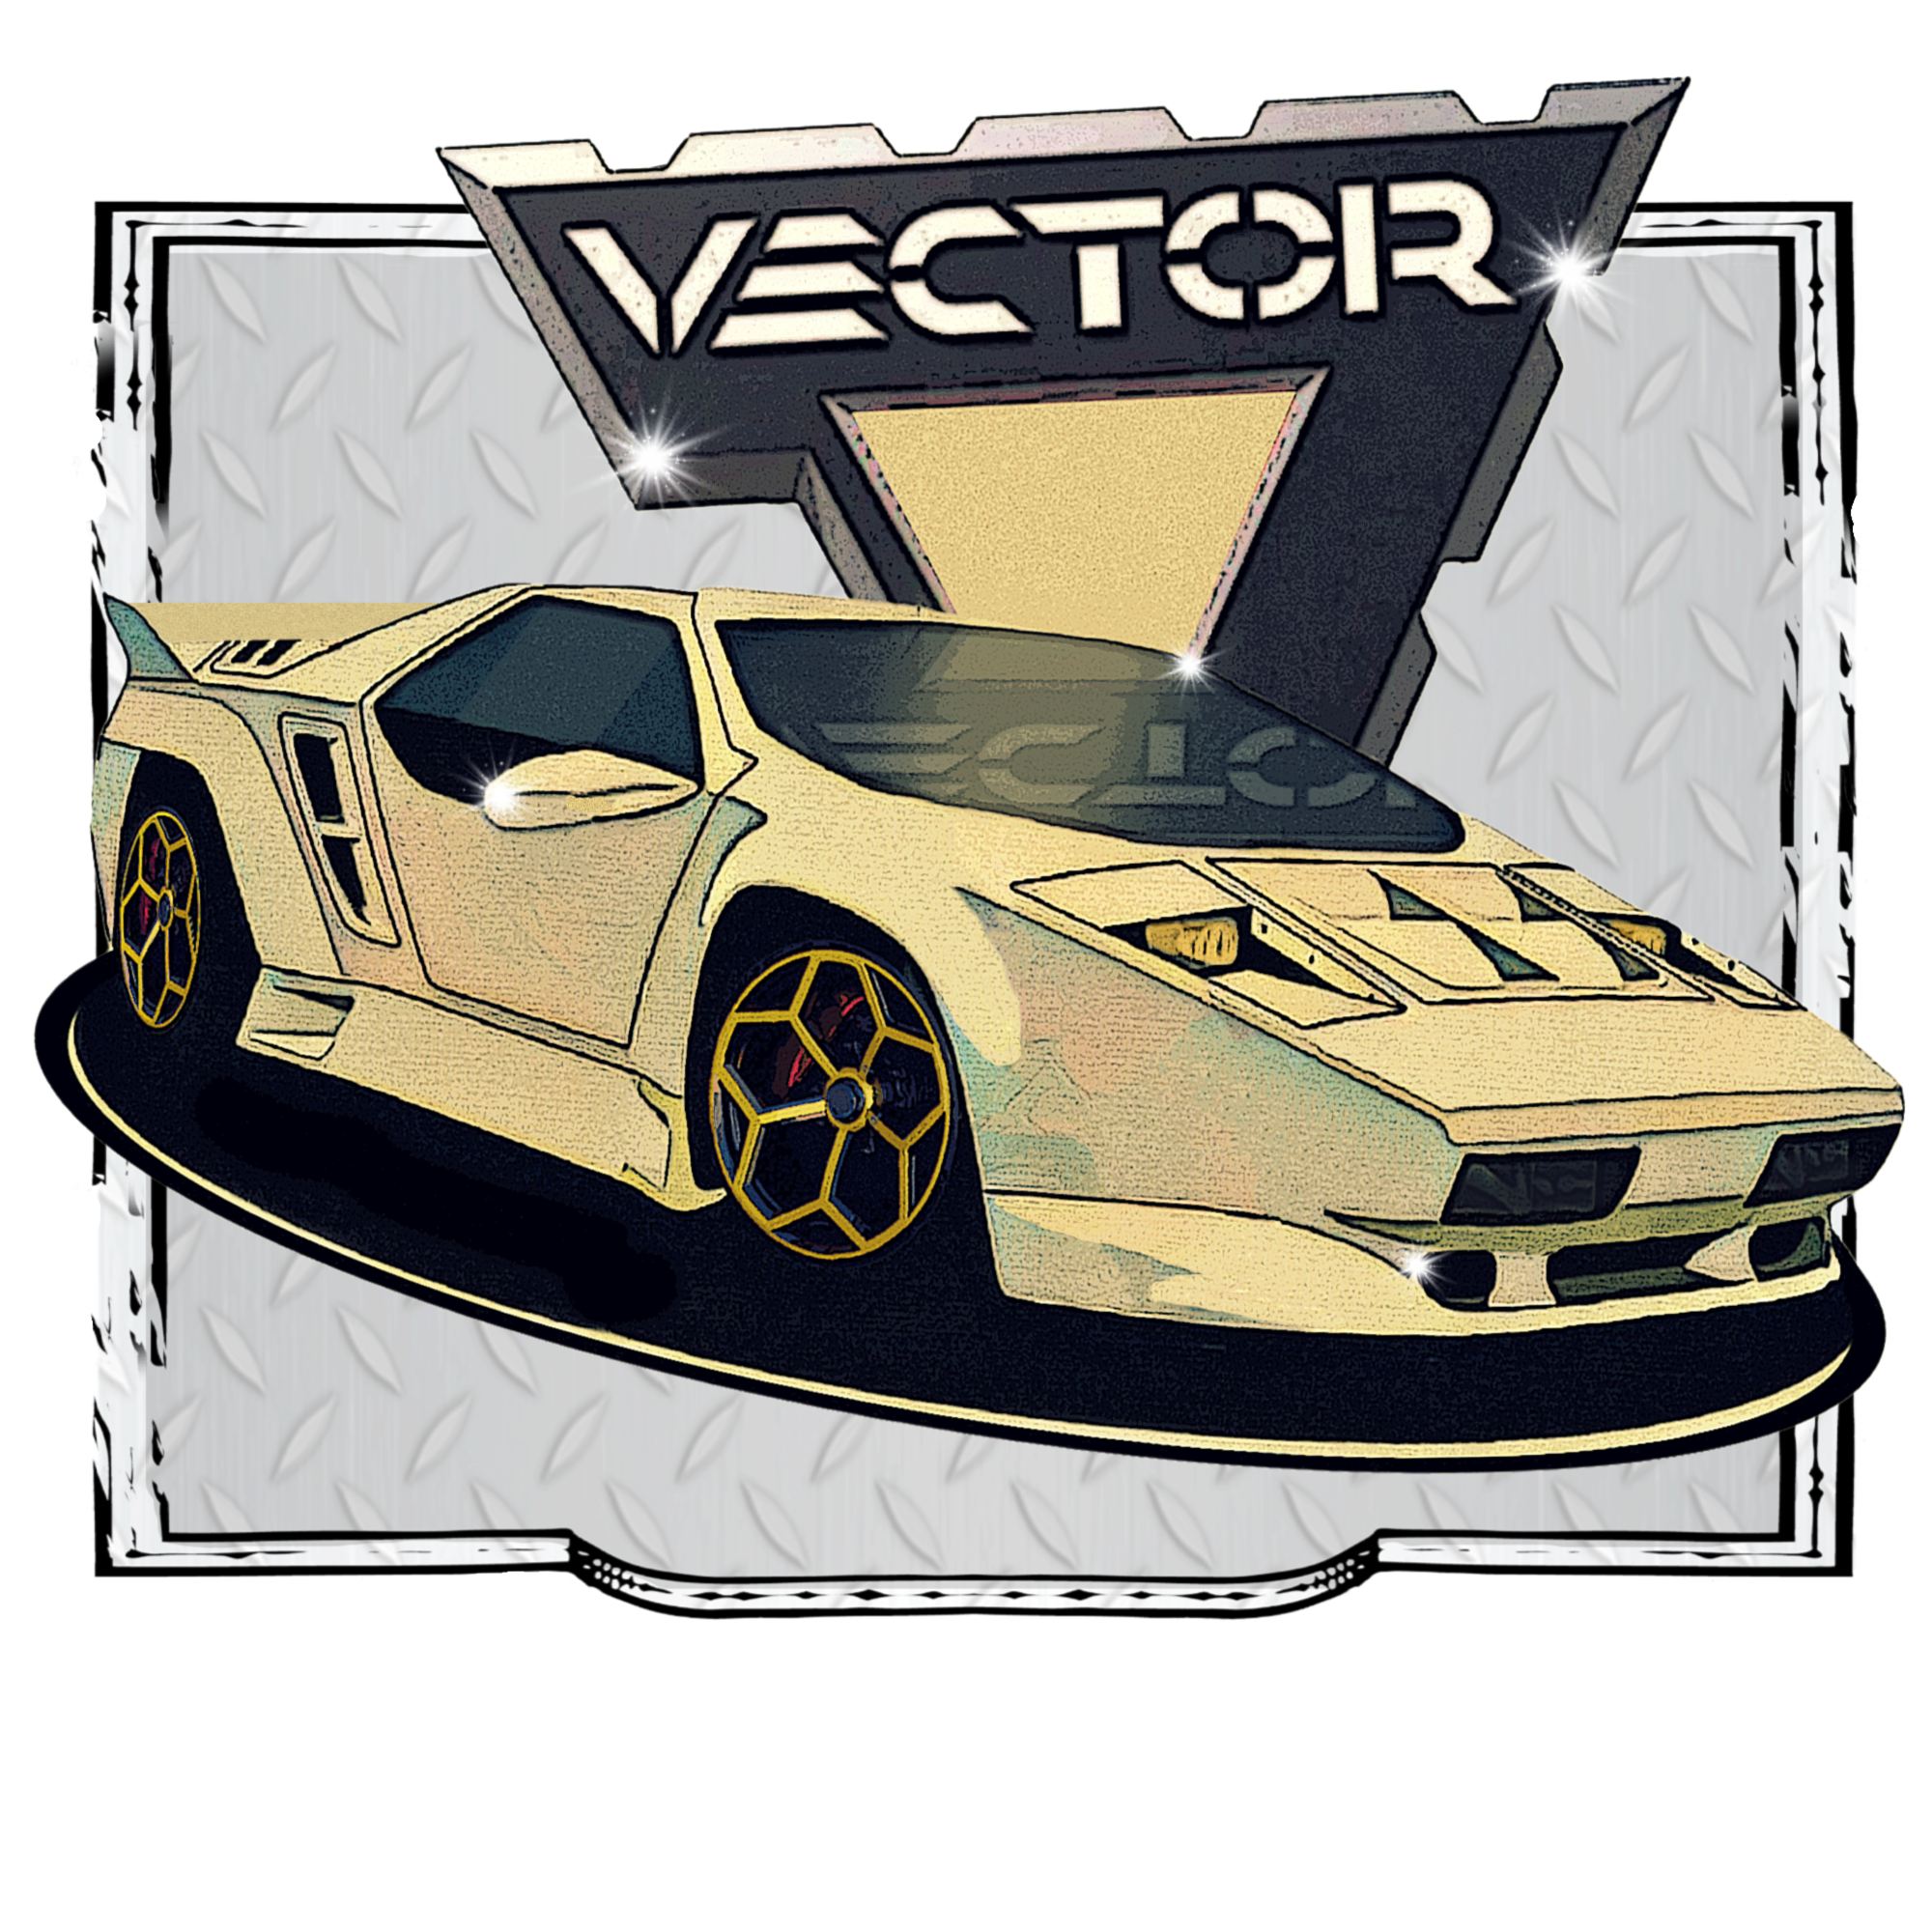 1992 Vector W8 Super Car - Image